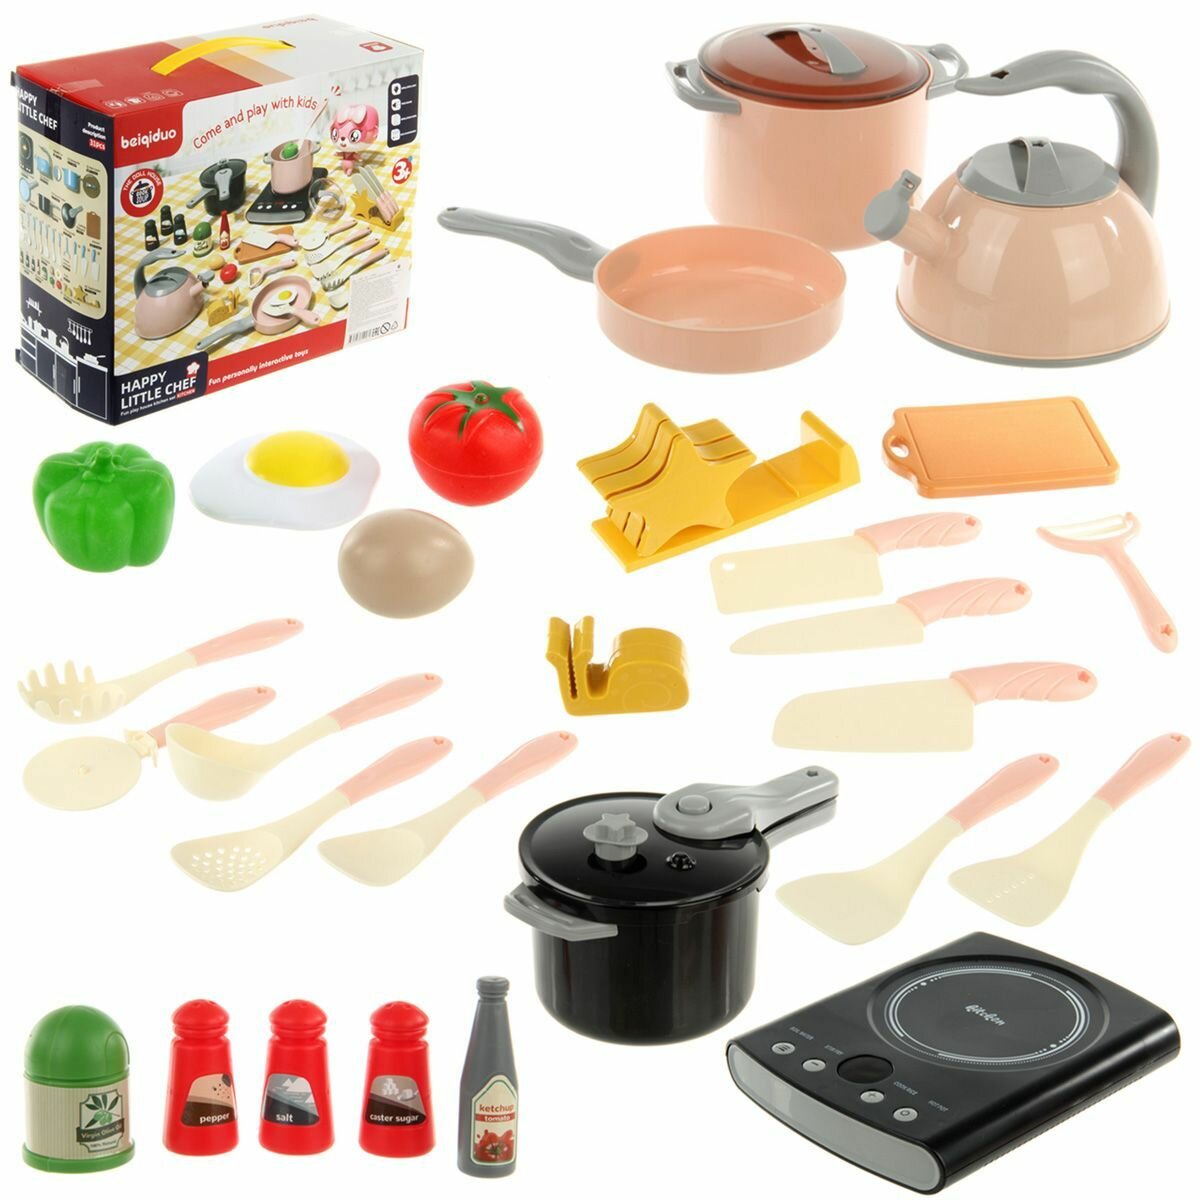 Набор игрушечной посуды, 31 предмет, Veld Co / Кухонный детский игровой набор с продуктами / Сюжетно-ролевые игрушки для кухни